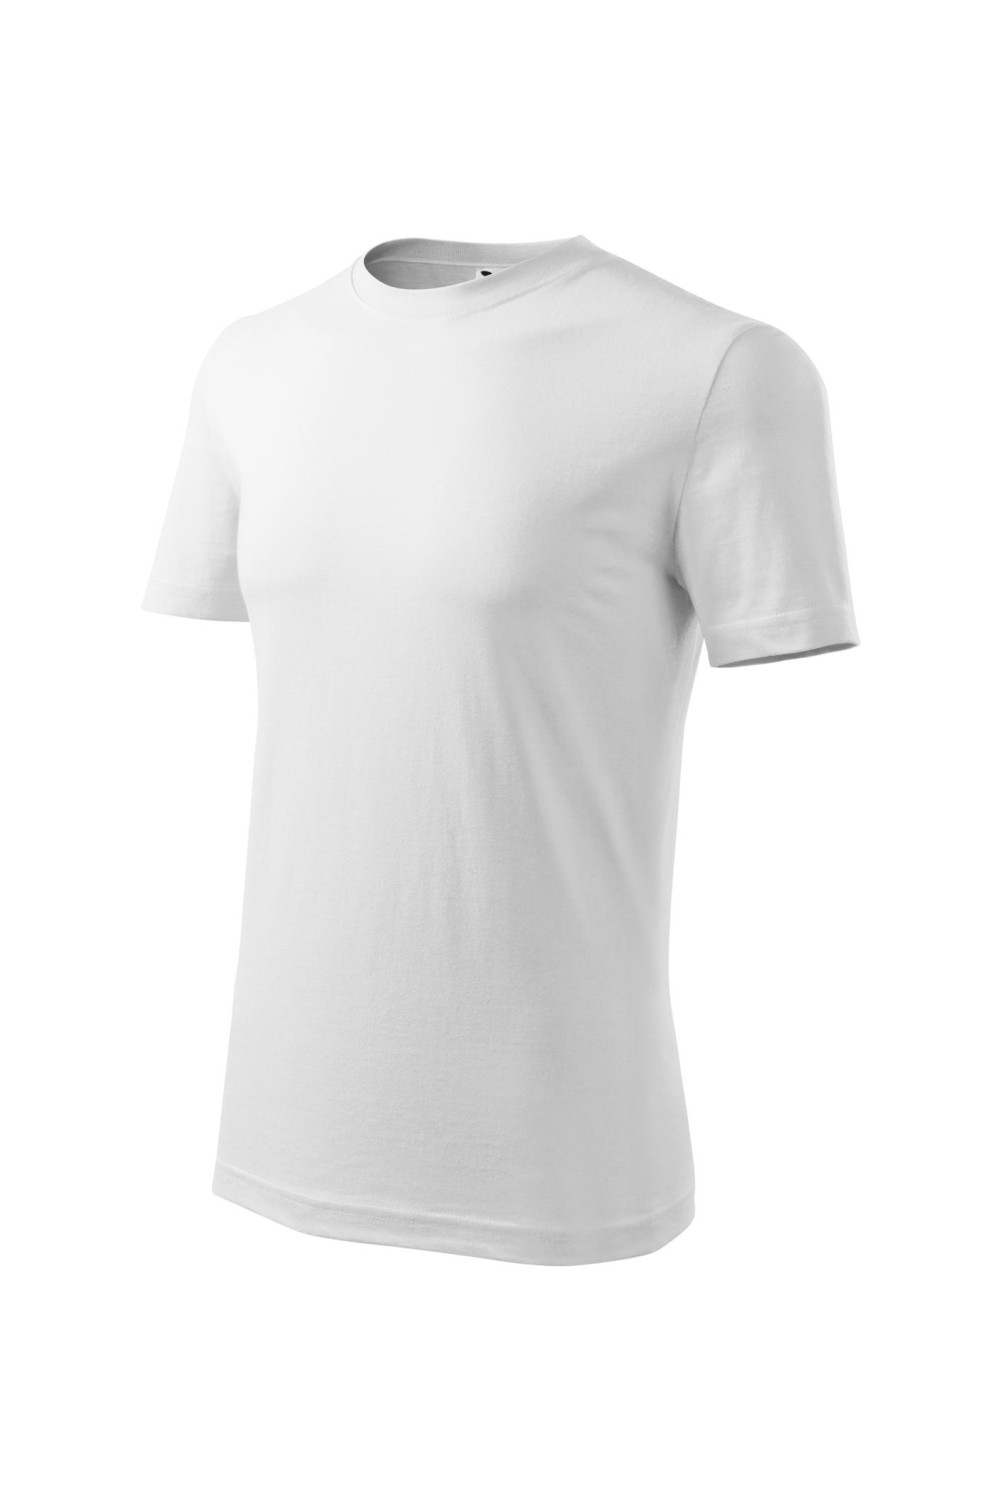 Koszulka męska 100% bawełna CLASSIC 132 biały